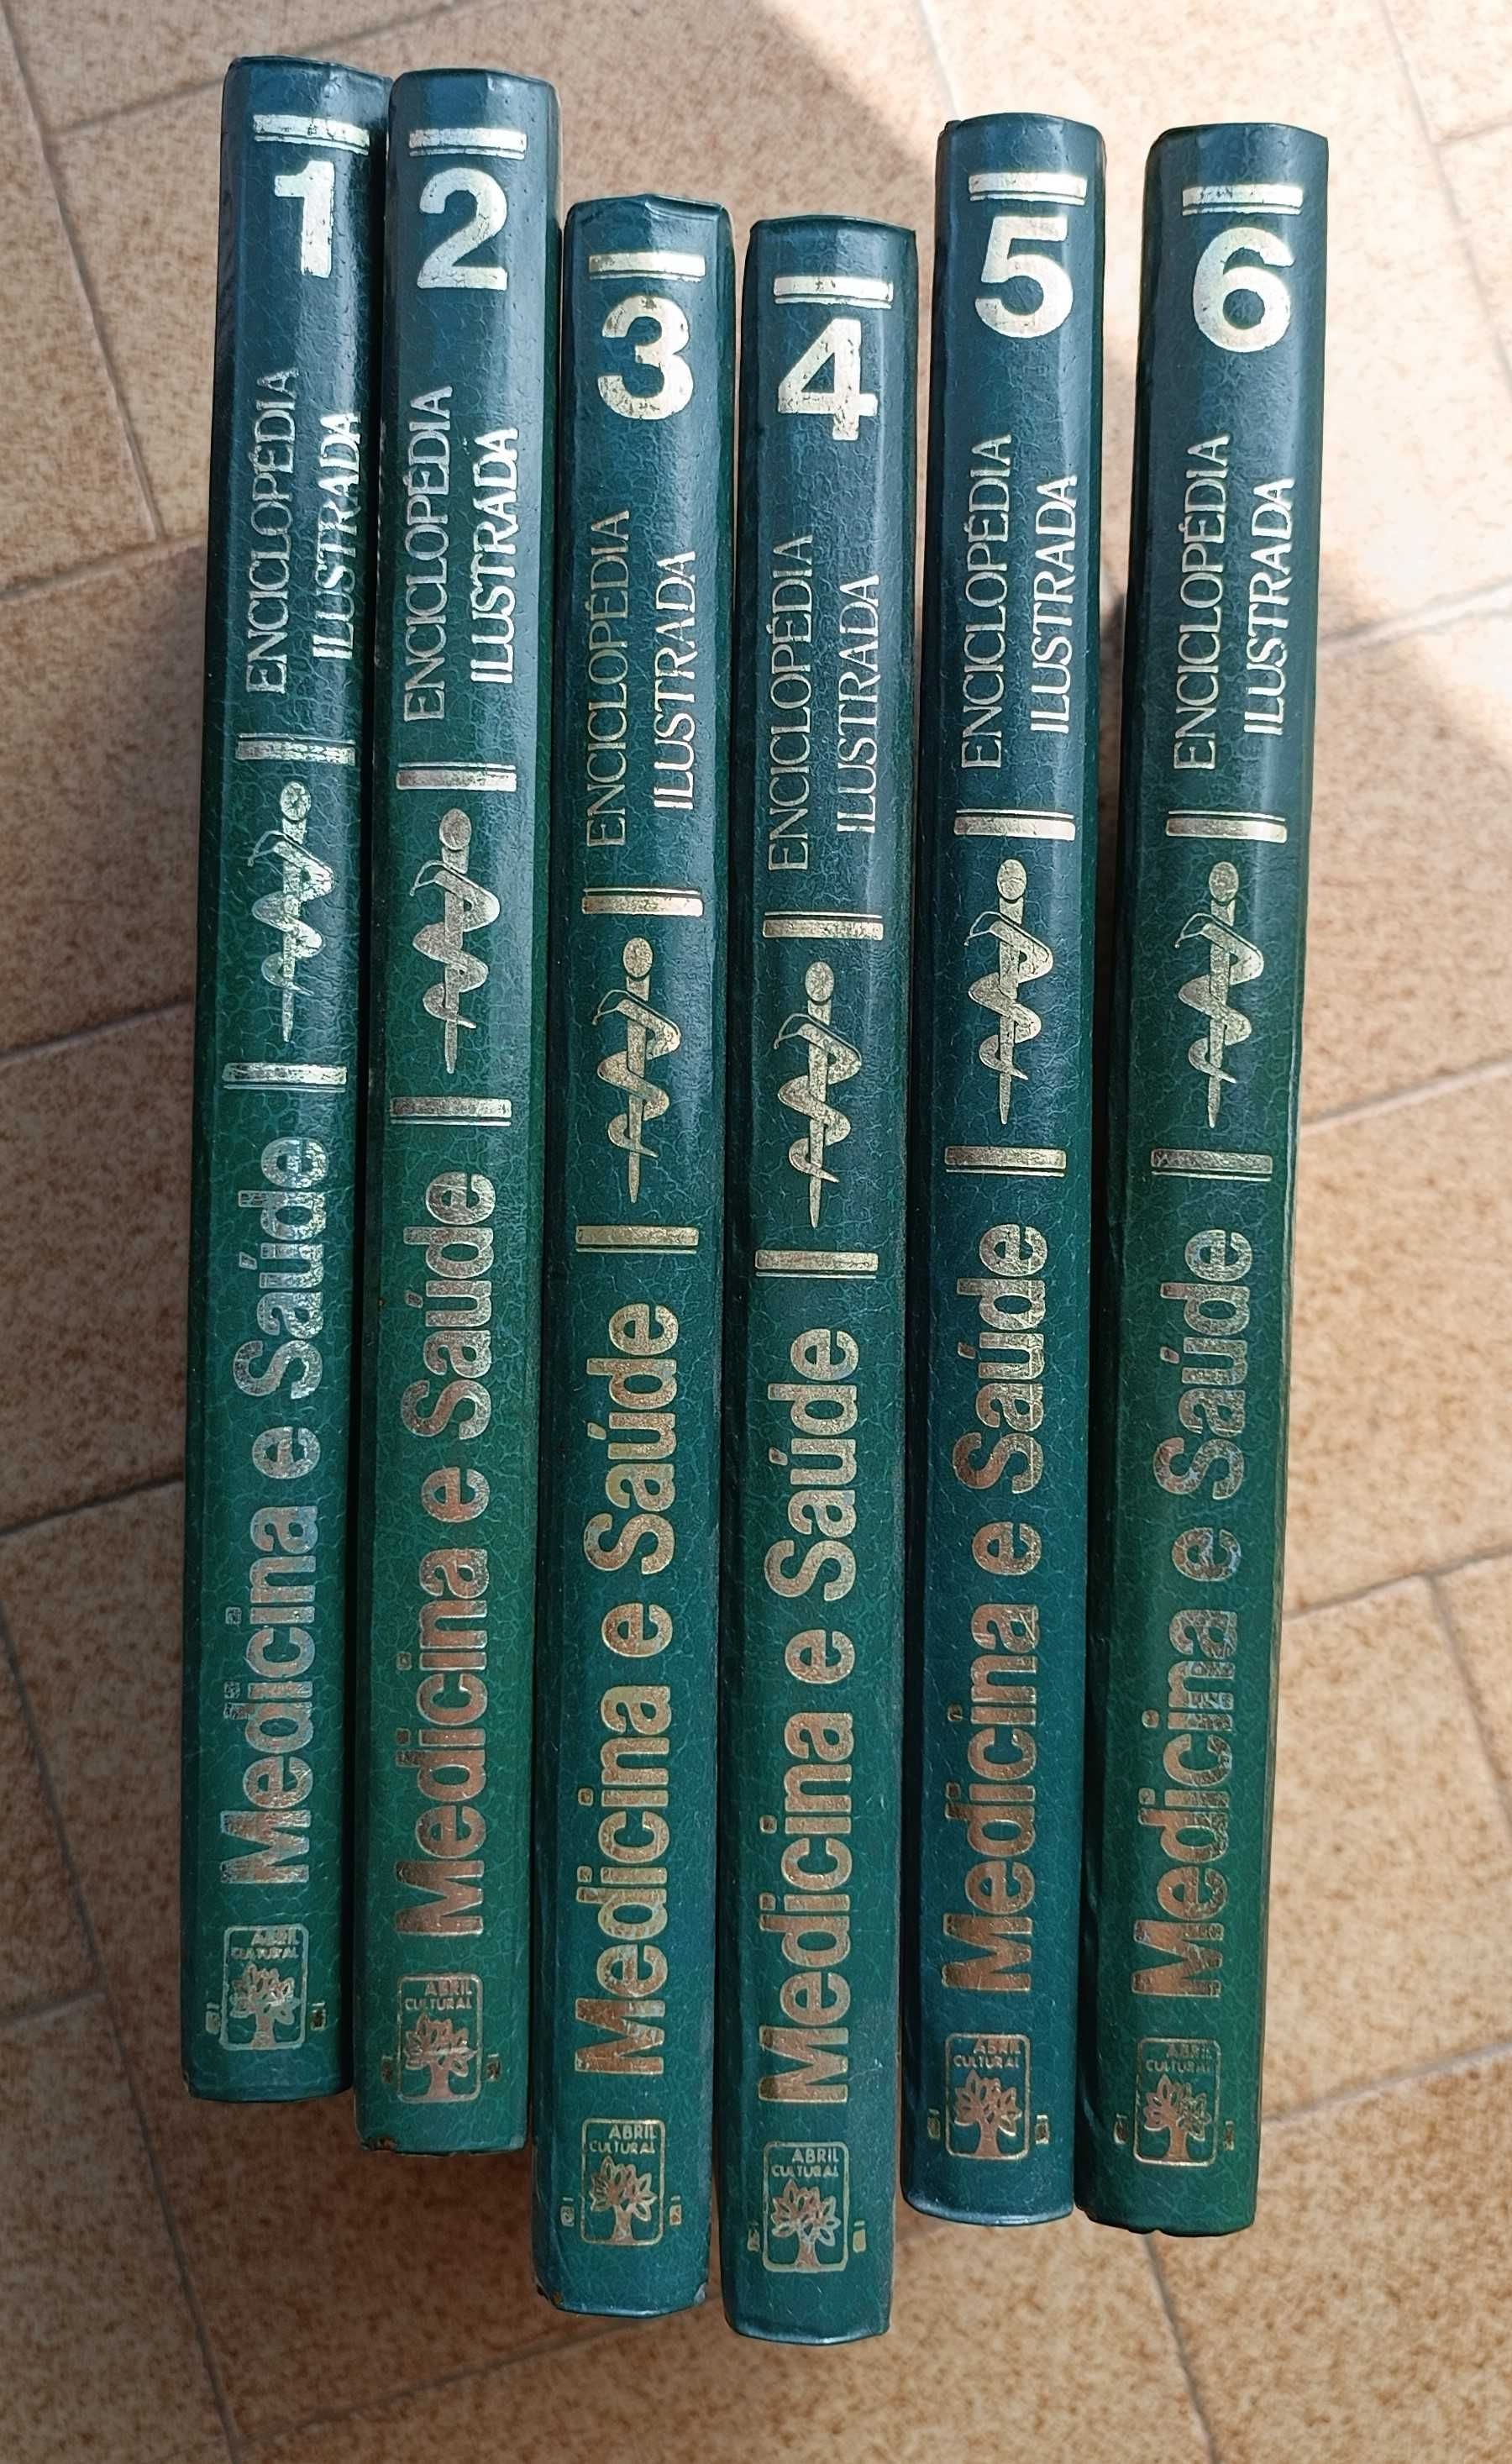 Enciclopédia Ilustrada de Medicina - 6 volumes